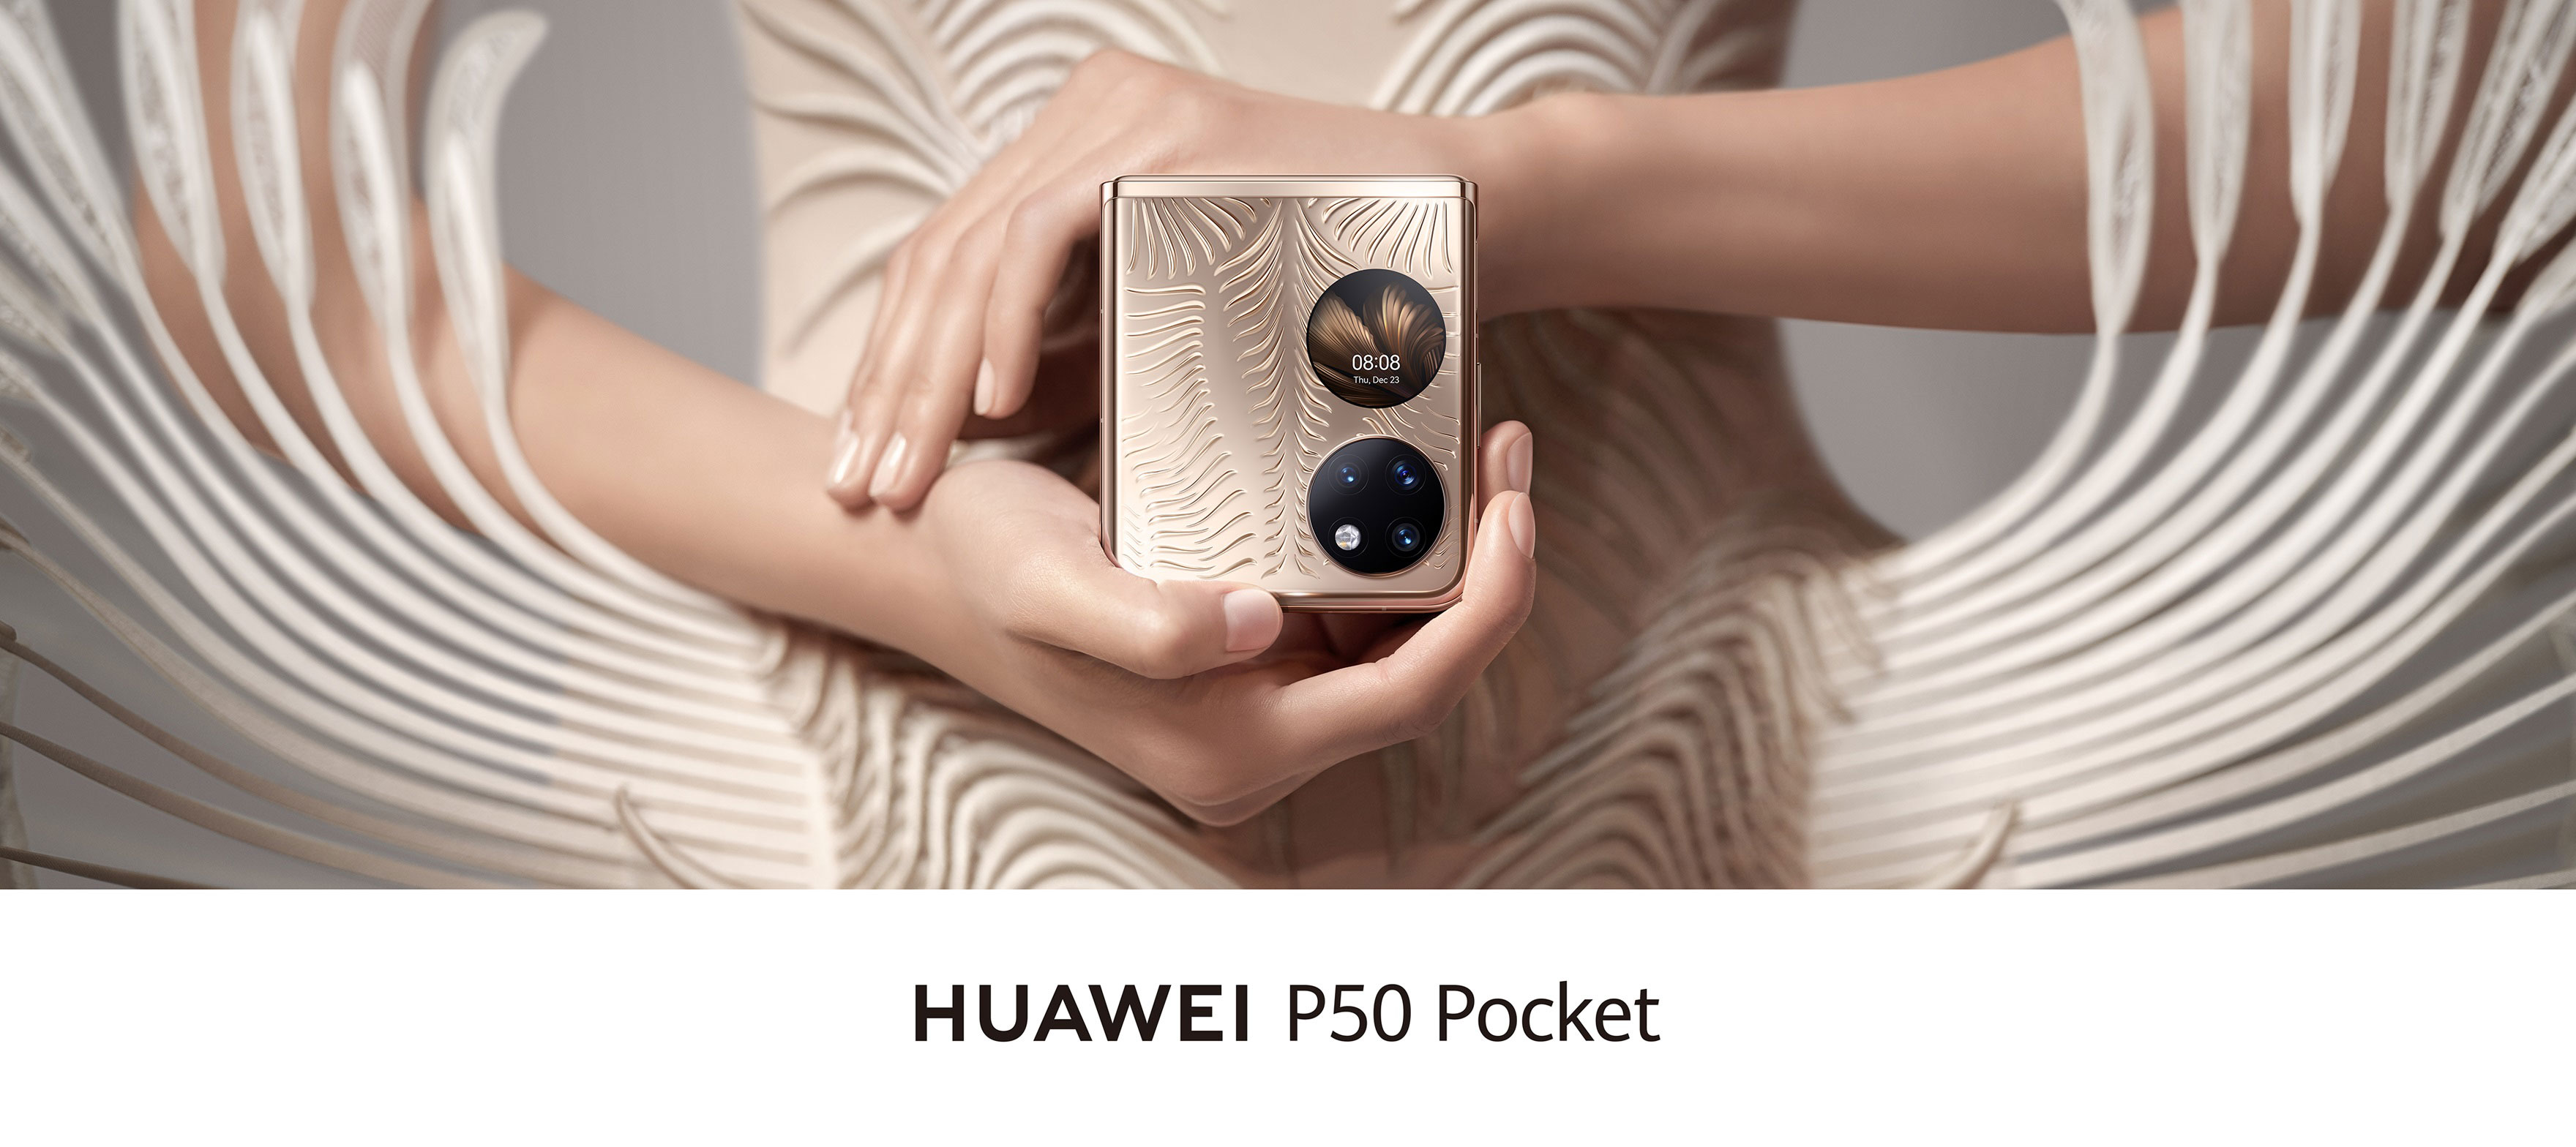 HUAWEI P50 Pocket KV Part 1